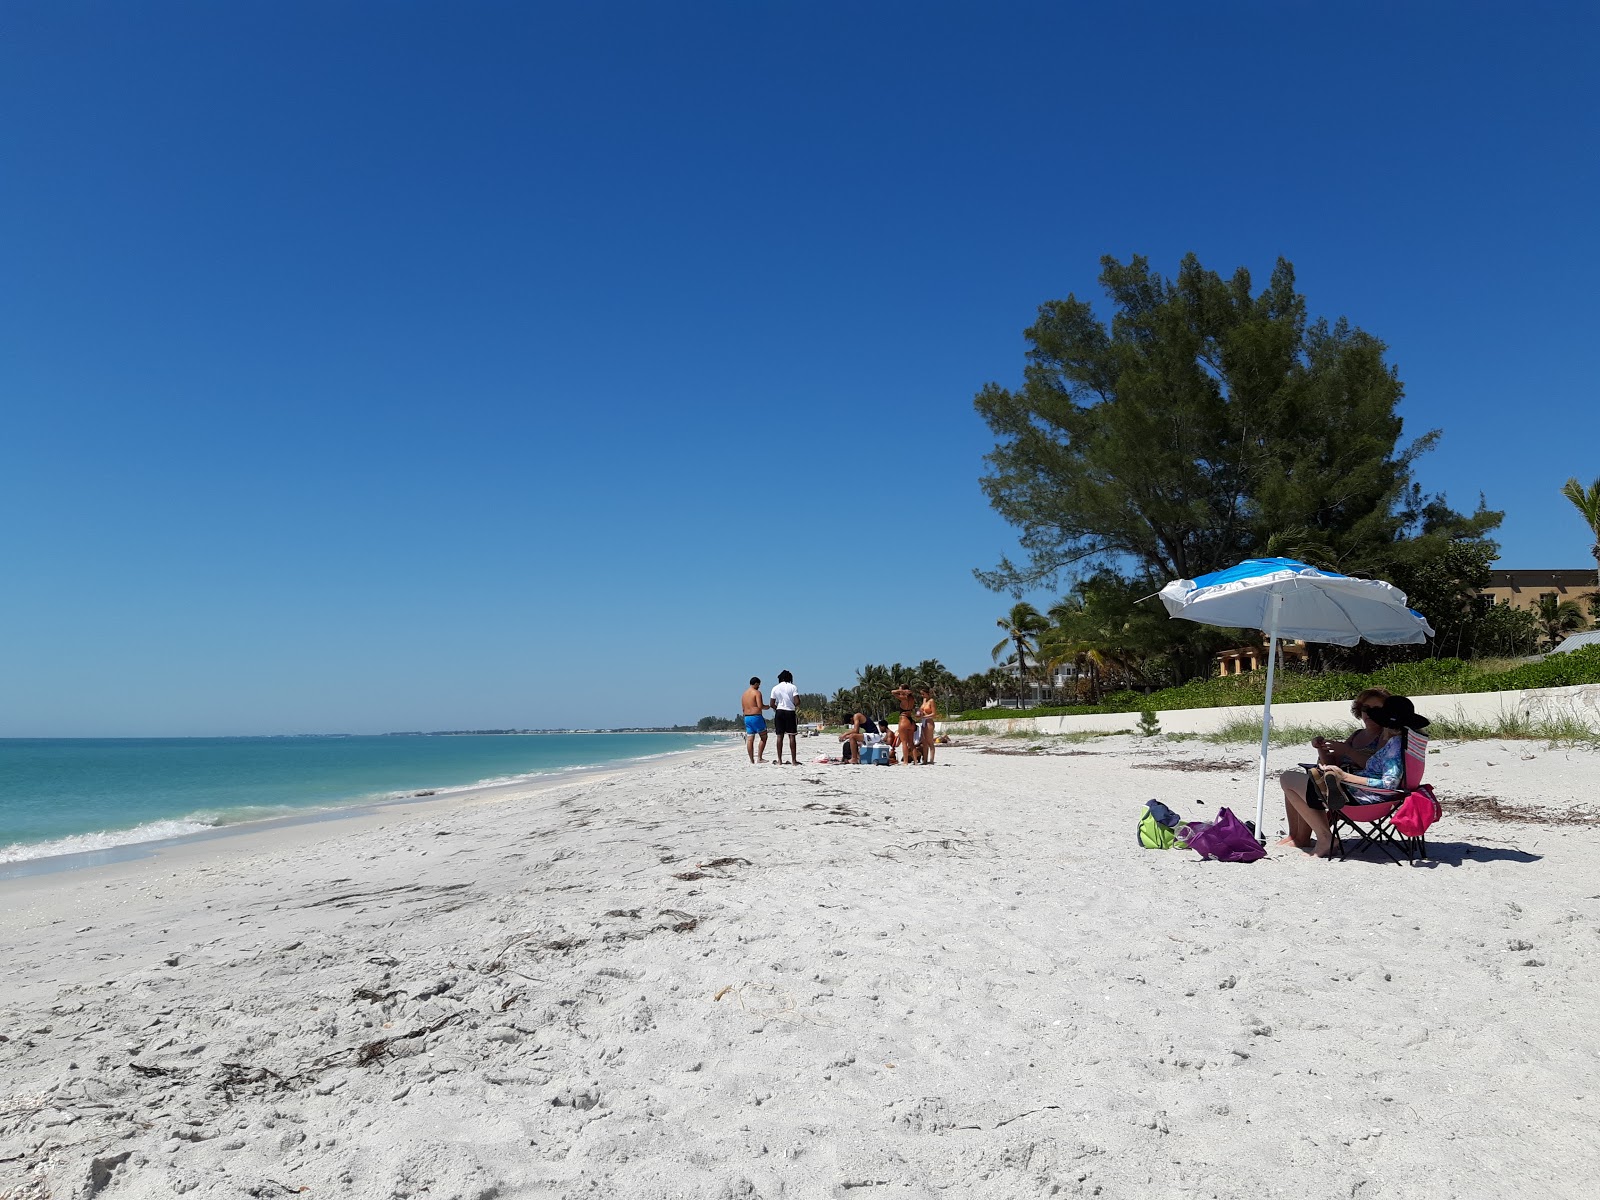 Fotografie cu Gasparilla Island beach - locul popular printre cunoscătorii de relaxare